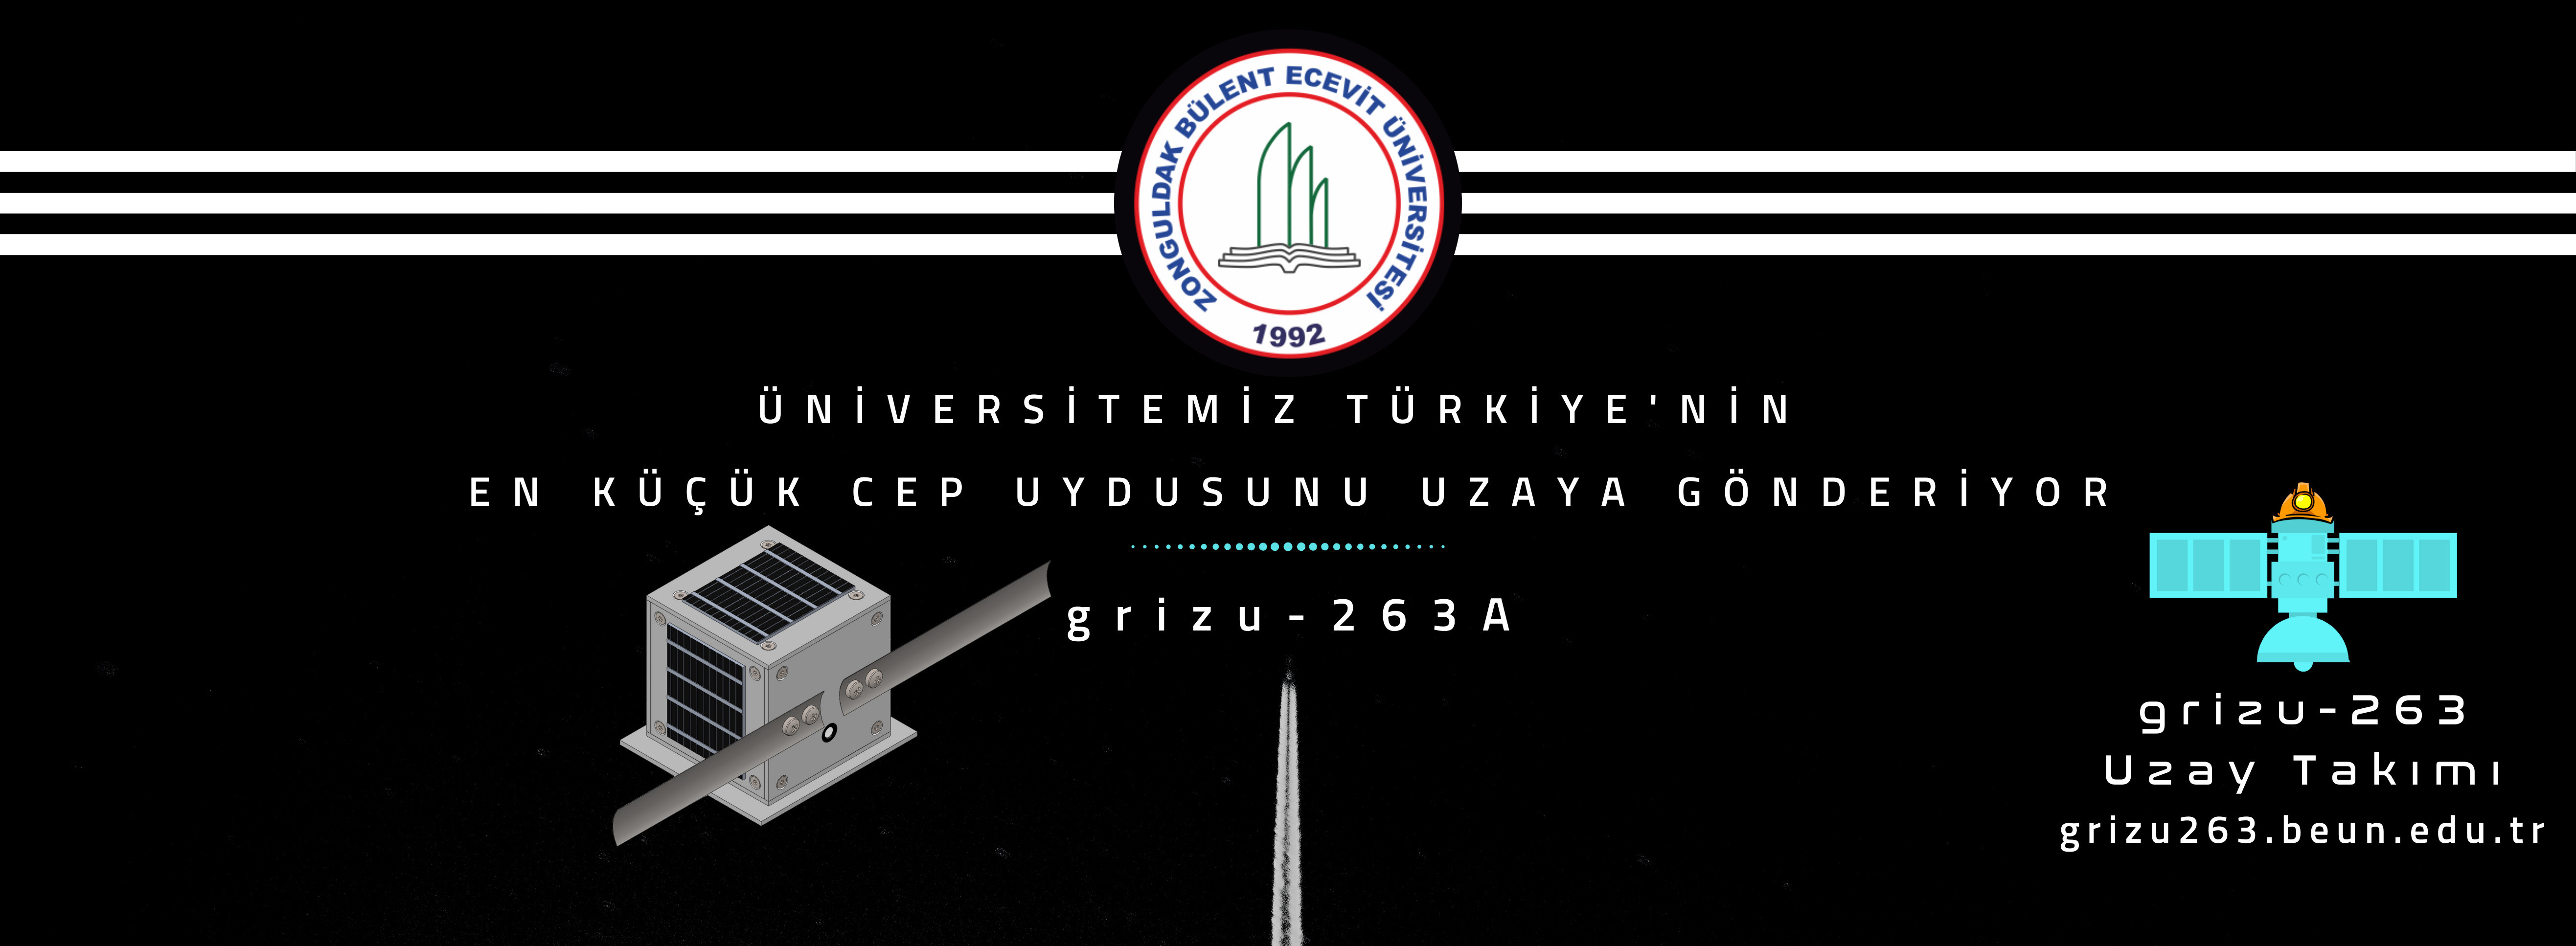 En küçük cep uydusu 5. kez Türkiye'yi temsil ediyor. 